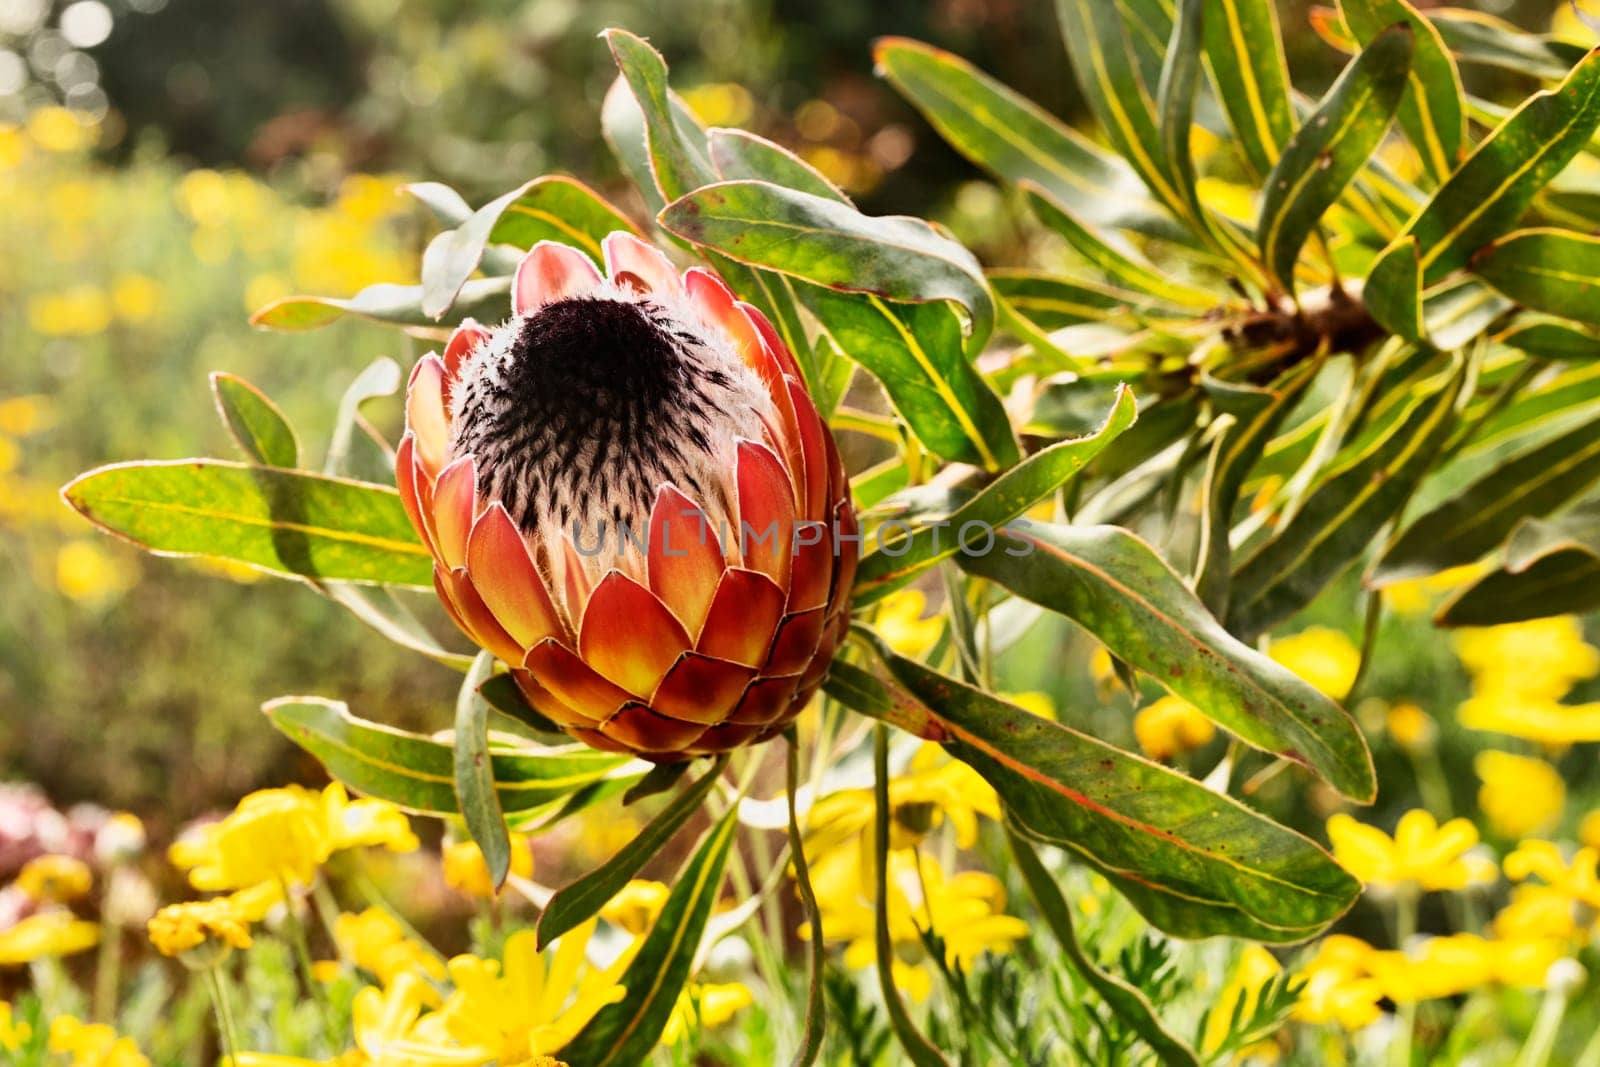 Protea flower in the garden by victimewalker